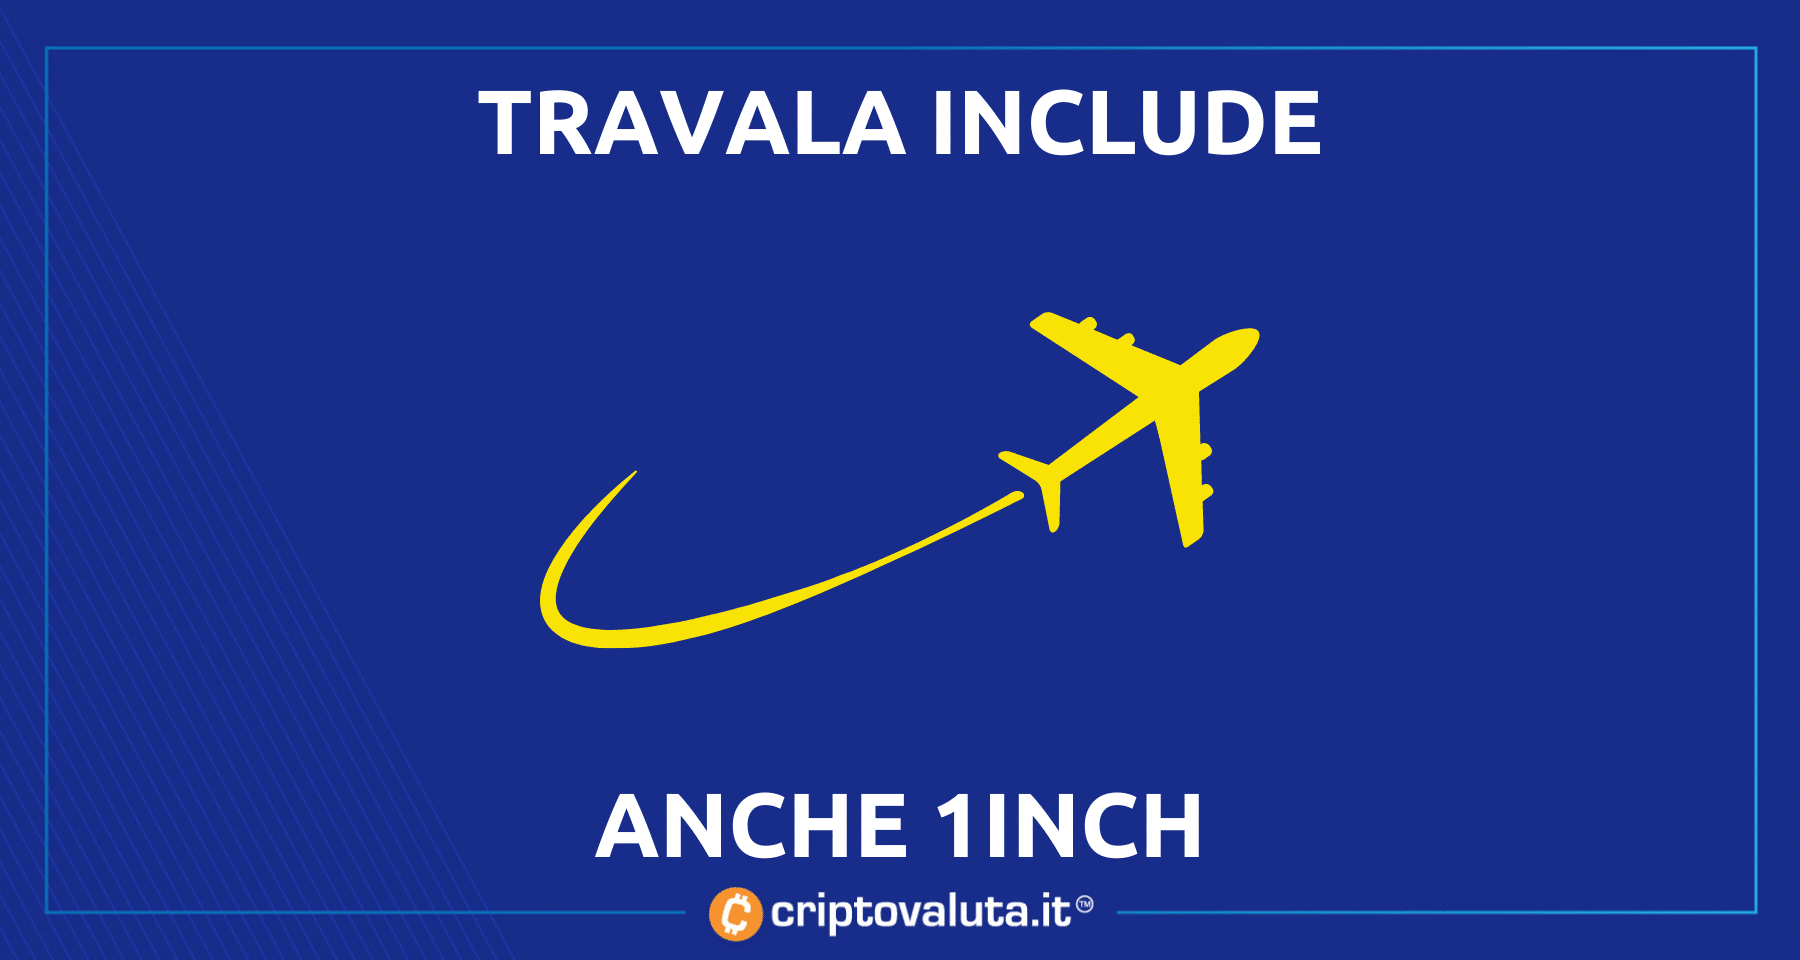 1INCH vola con Travala | Il token sarà usato per i pagamenti